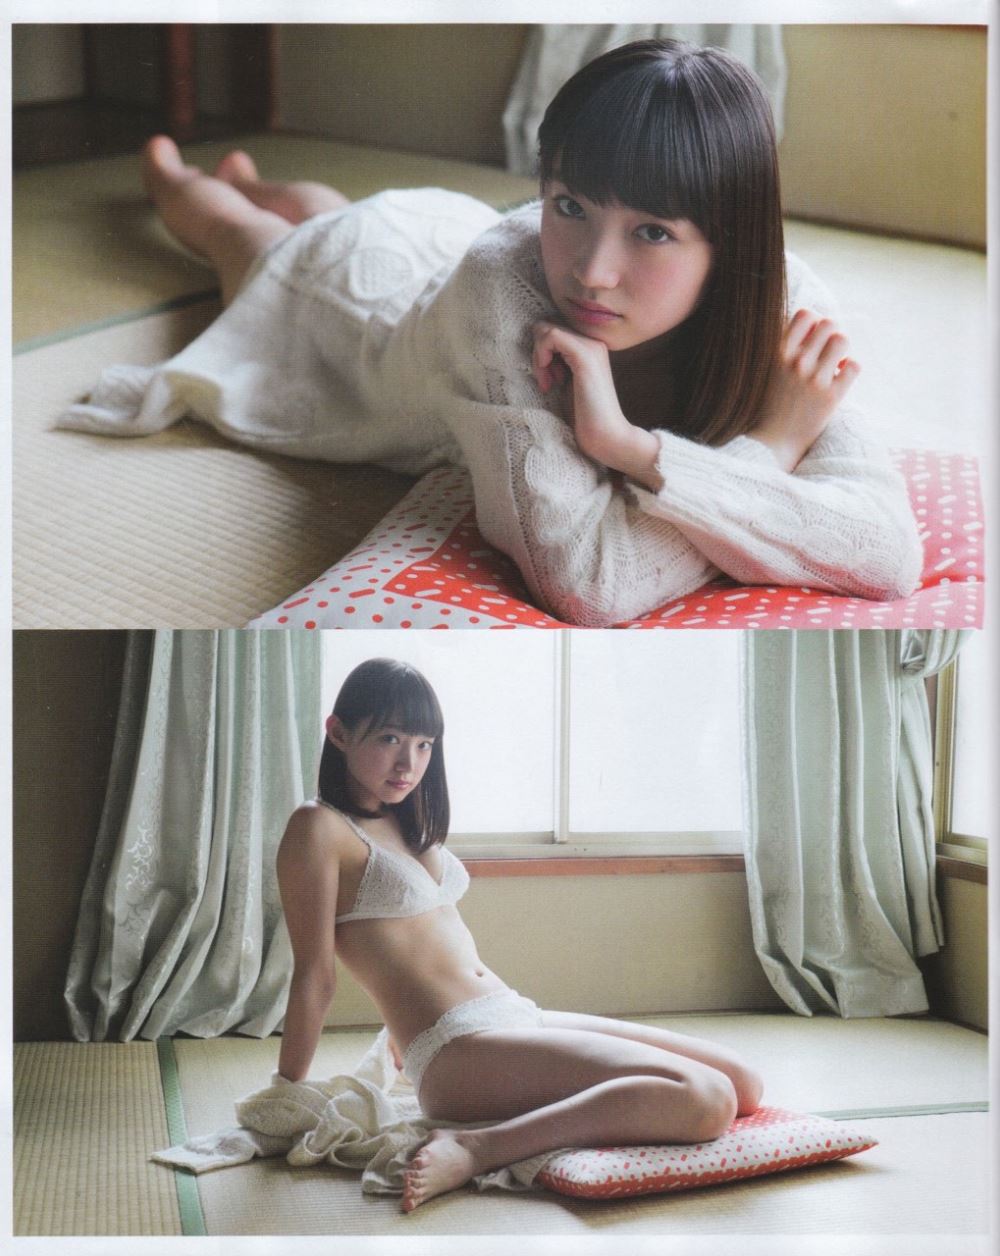 太田夢莉 1万年に1人 可愛い アイドル 水着 画像 35